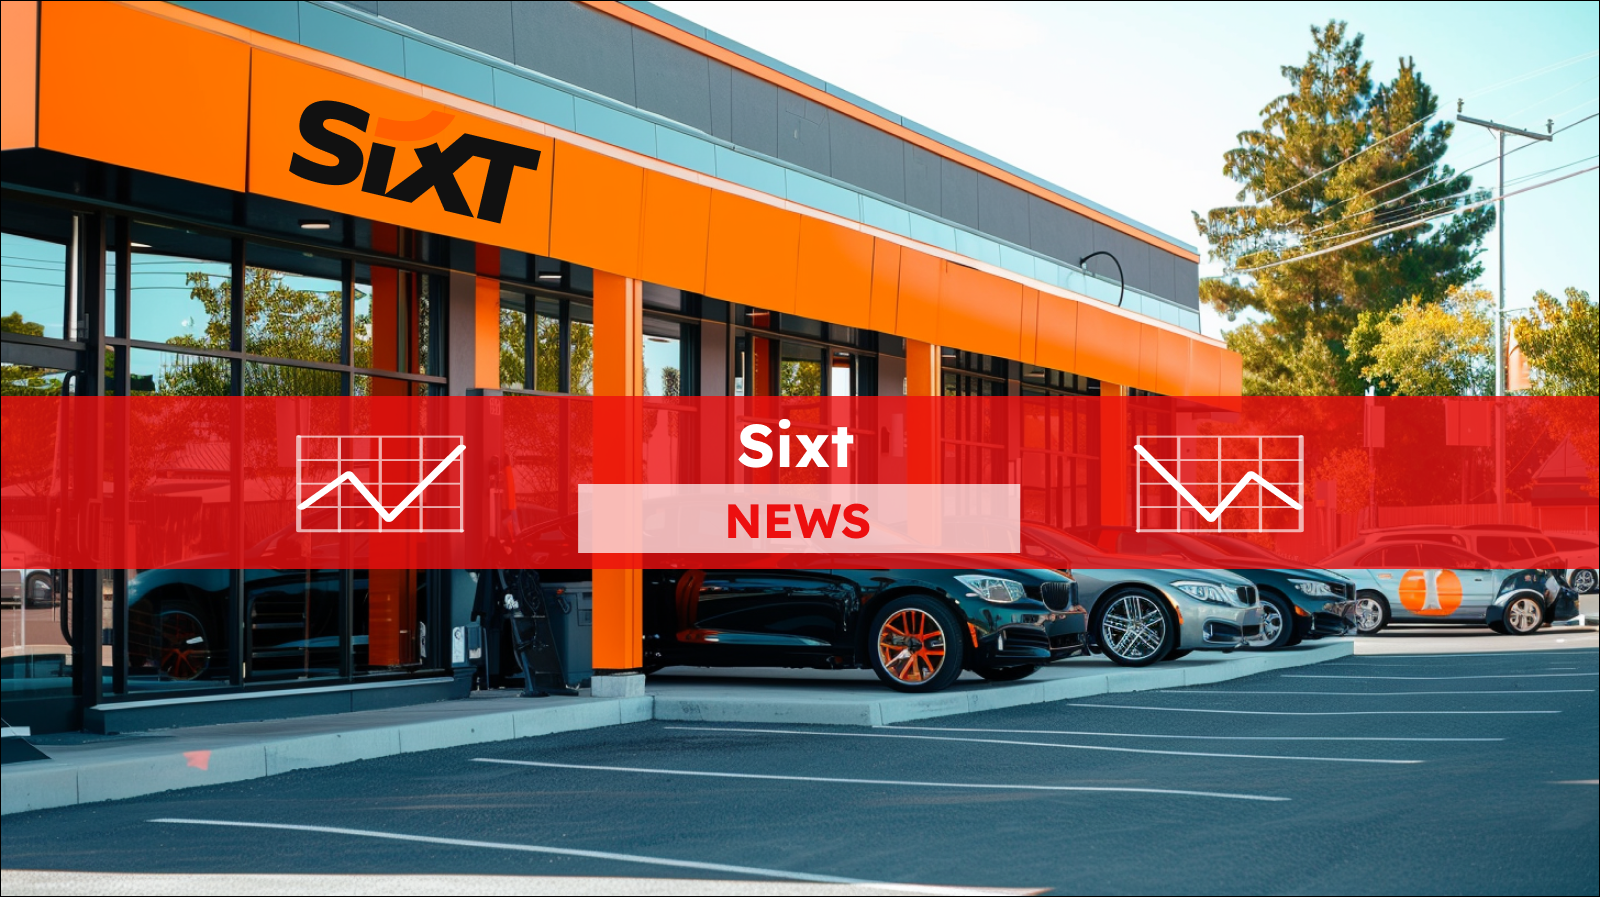 Autovermietungsbüro mit leuchtend orangefarbenen Akzenten und einer Reihe von Autos davor, darüber ein Sixt NEWS Banner